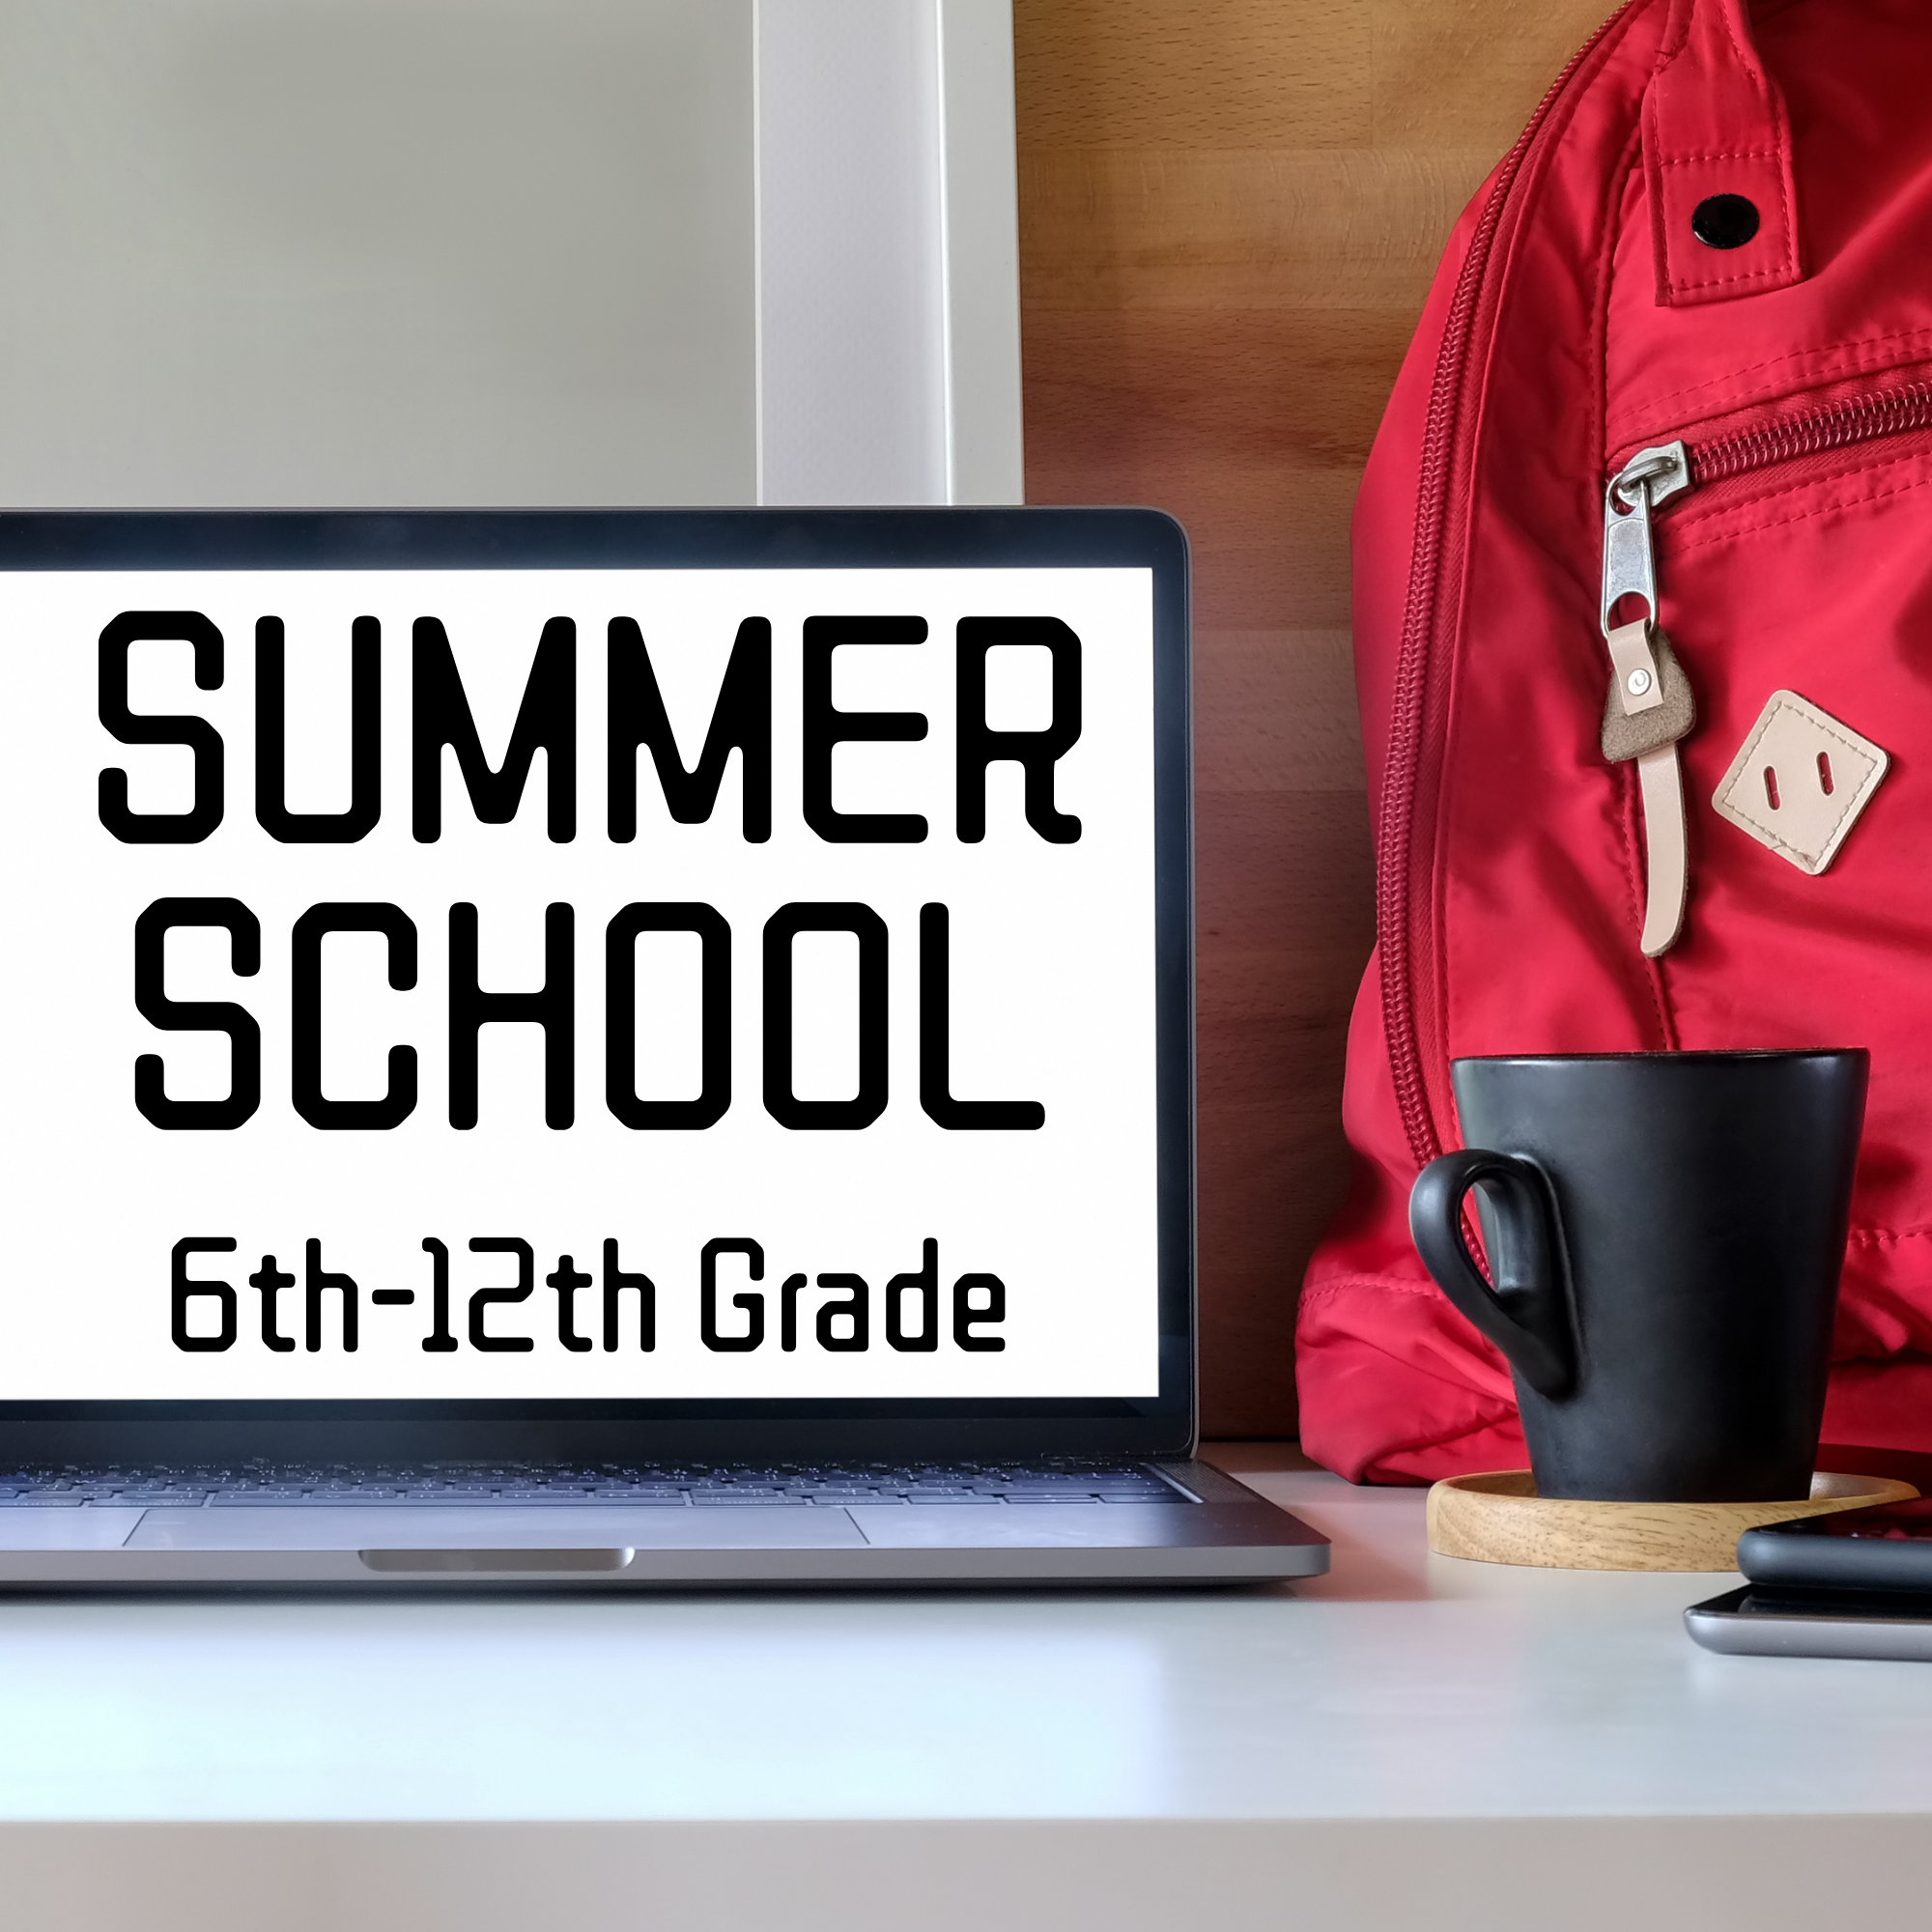 summer school 6th-12th grade